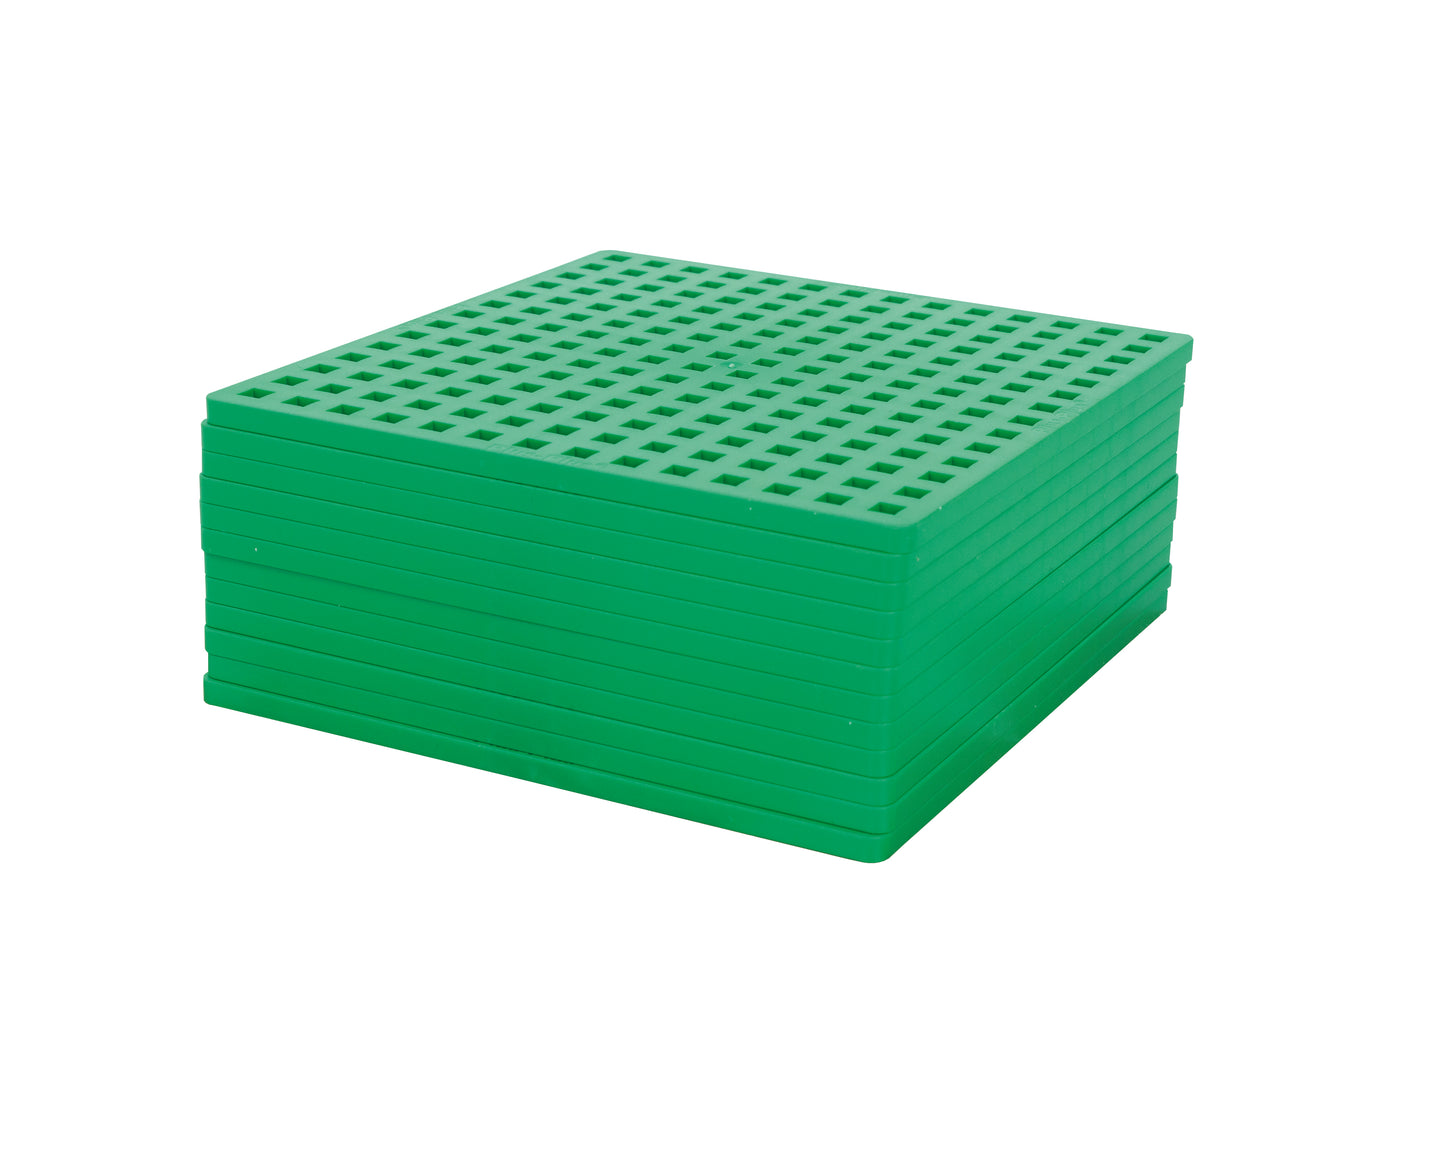 Plus-Plus 3600 Color Mix met 12 groene bouwplaten